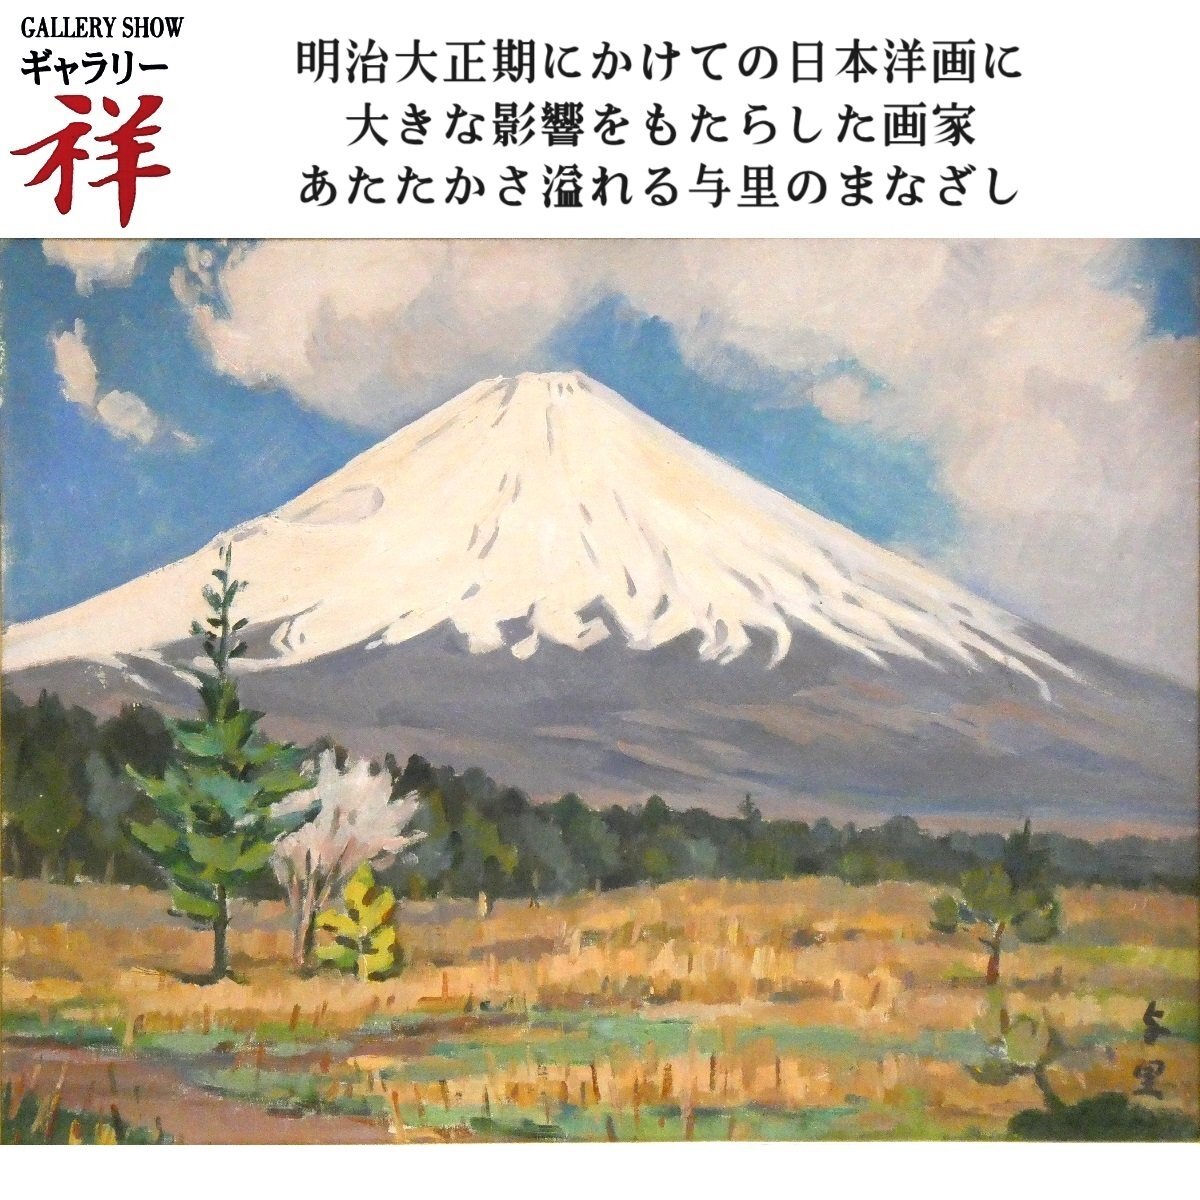 थानेदार [प्रामाणिक कार्य] योरी सैटो फ़ूजी ऑयल पेंटिंग नंबर 10 हस्ताक्षरित सैतामा में जन्मे आधुनिक जापानी पश्चिमी चित्रकला के मास्टर फ़ुसान-काई माउंट फ़ूजी हस्तलिखित एक तरह का [गैलरी थानेदार], चित्रकारी, तैल चित्र, प्रकृति, परिदृश्य चित्रकला